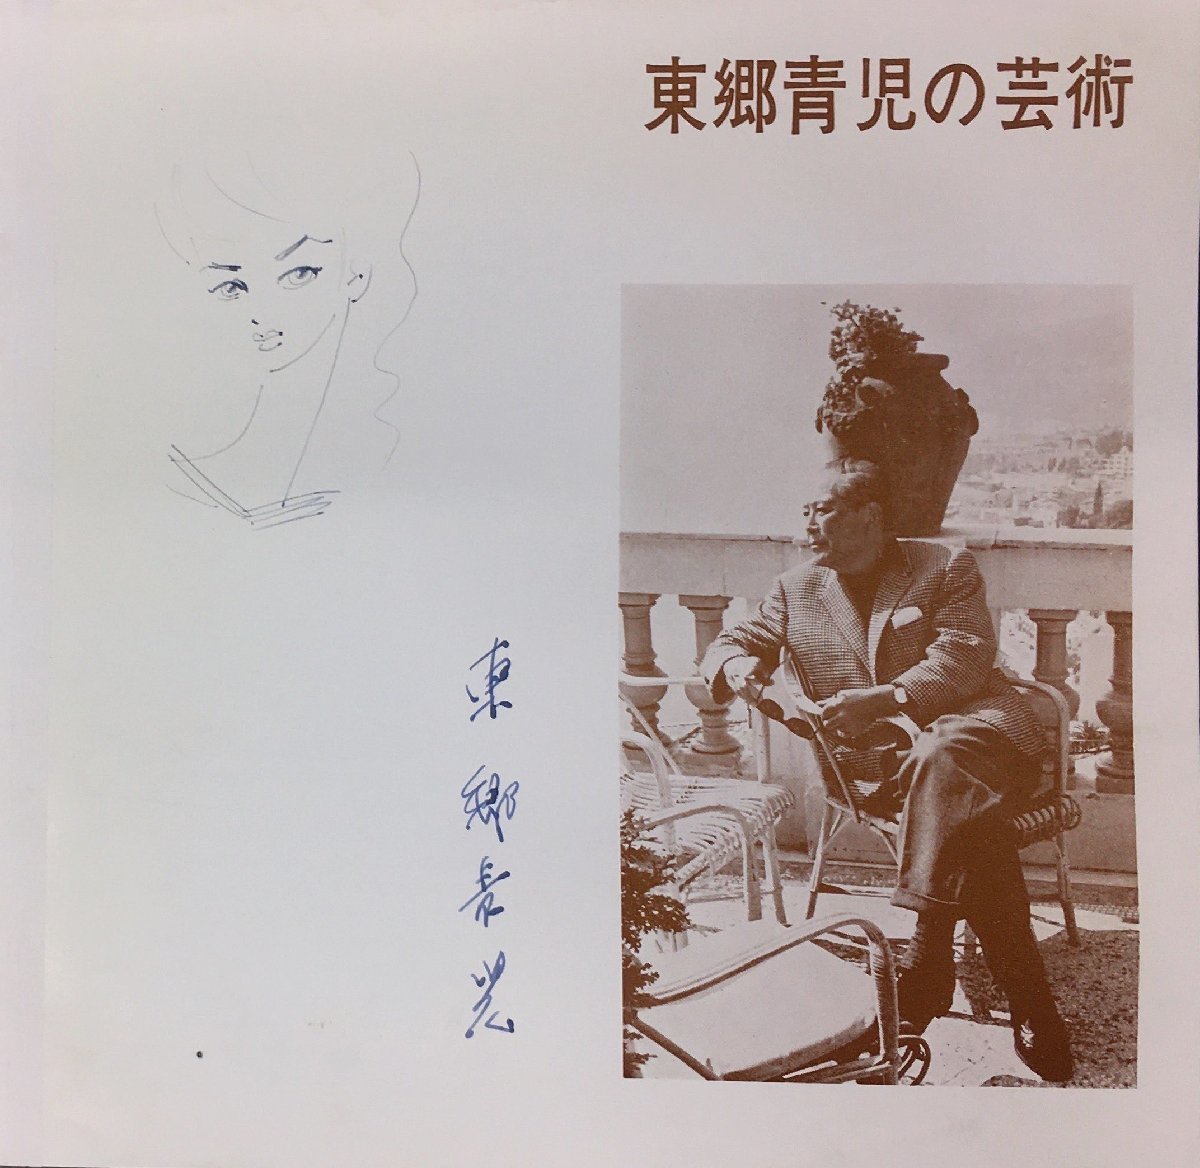 진품 보장 도고 세이지 여성의 손으로 그린 그림과 서명된 도고 세이지의 작품 니가타 미술관, 1962, 삽화, 그림, 초상화